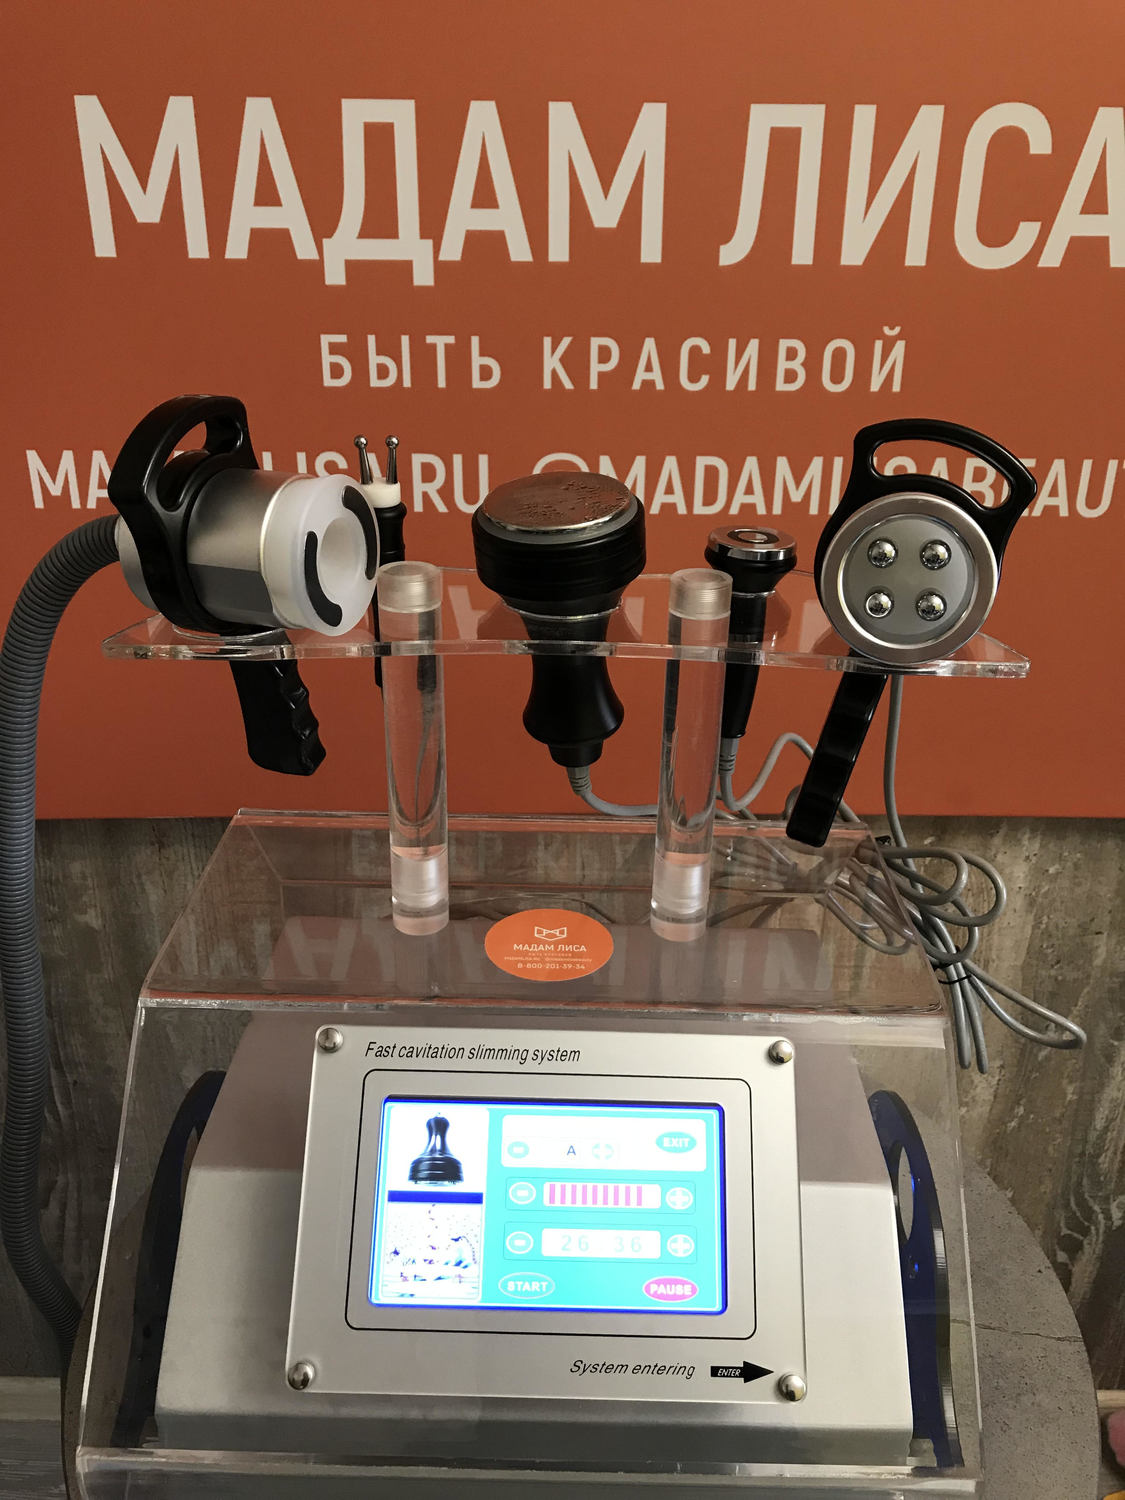 Аппарат ML-VKM 5в1